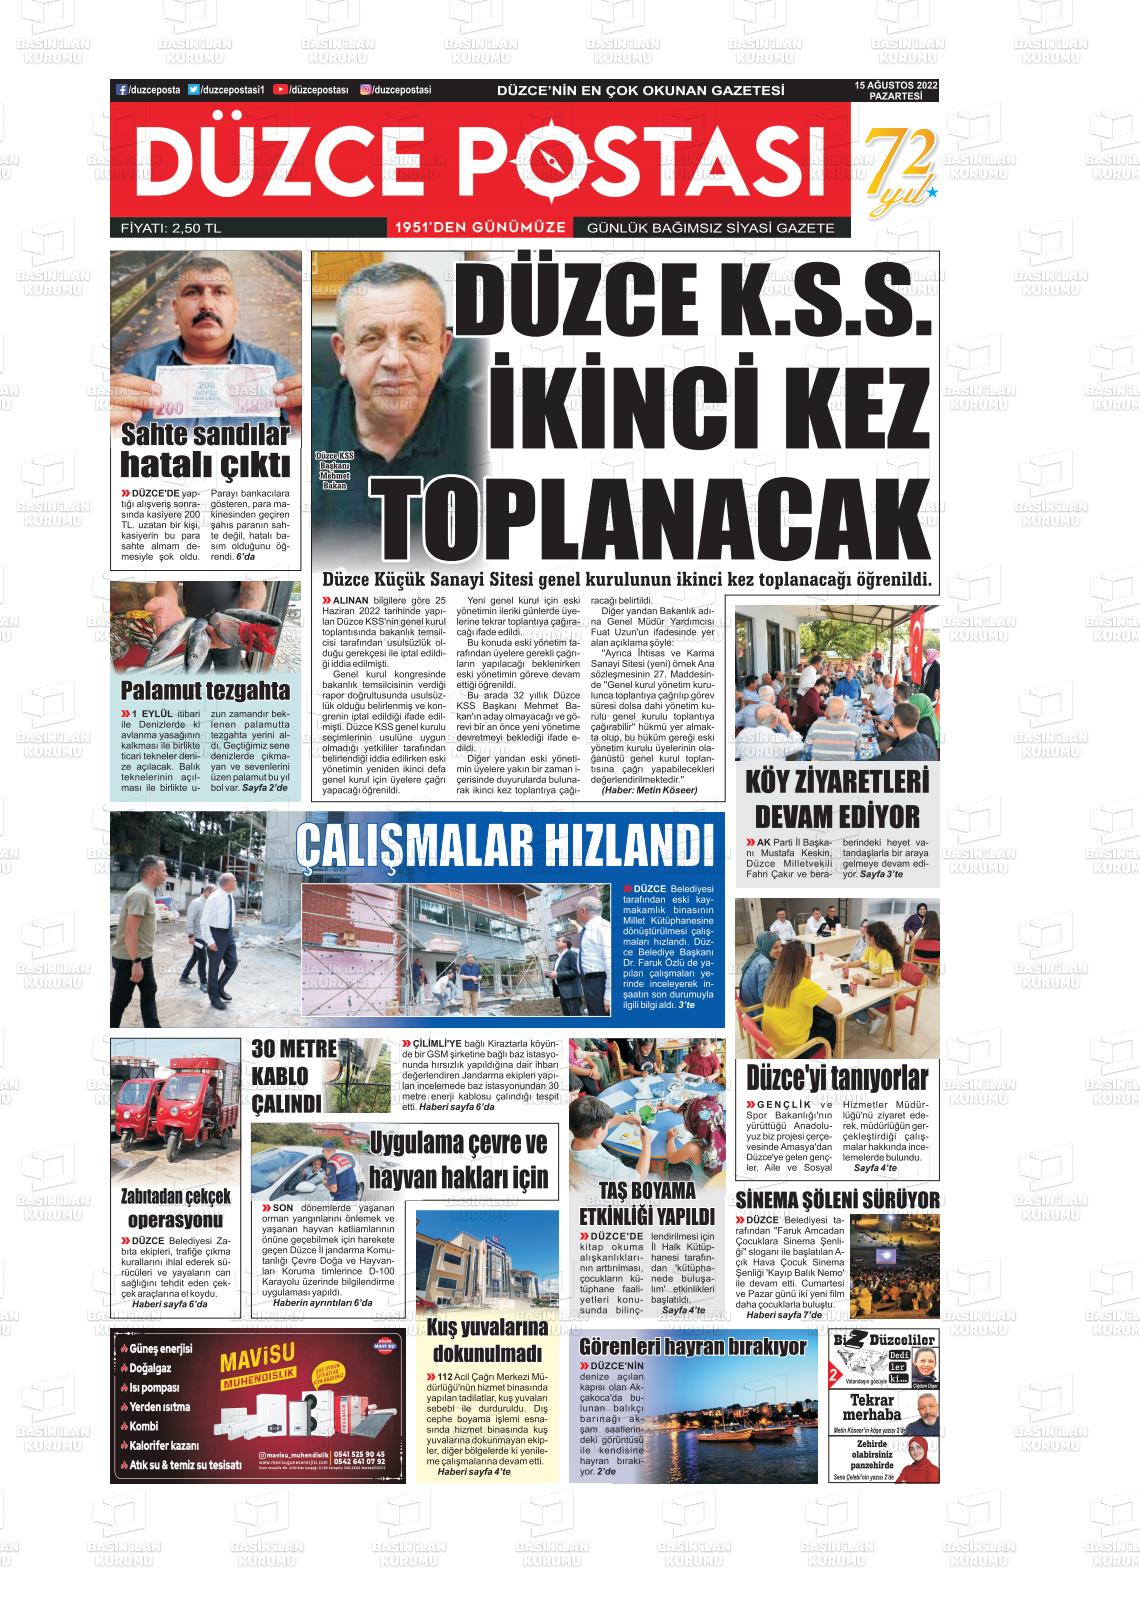 15 Ağustos 2022 Düzce Postası Gazete Manşeti